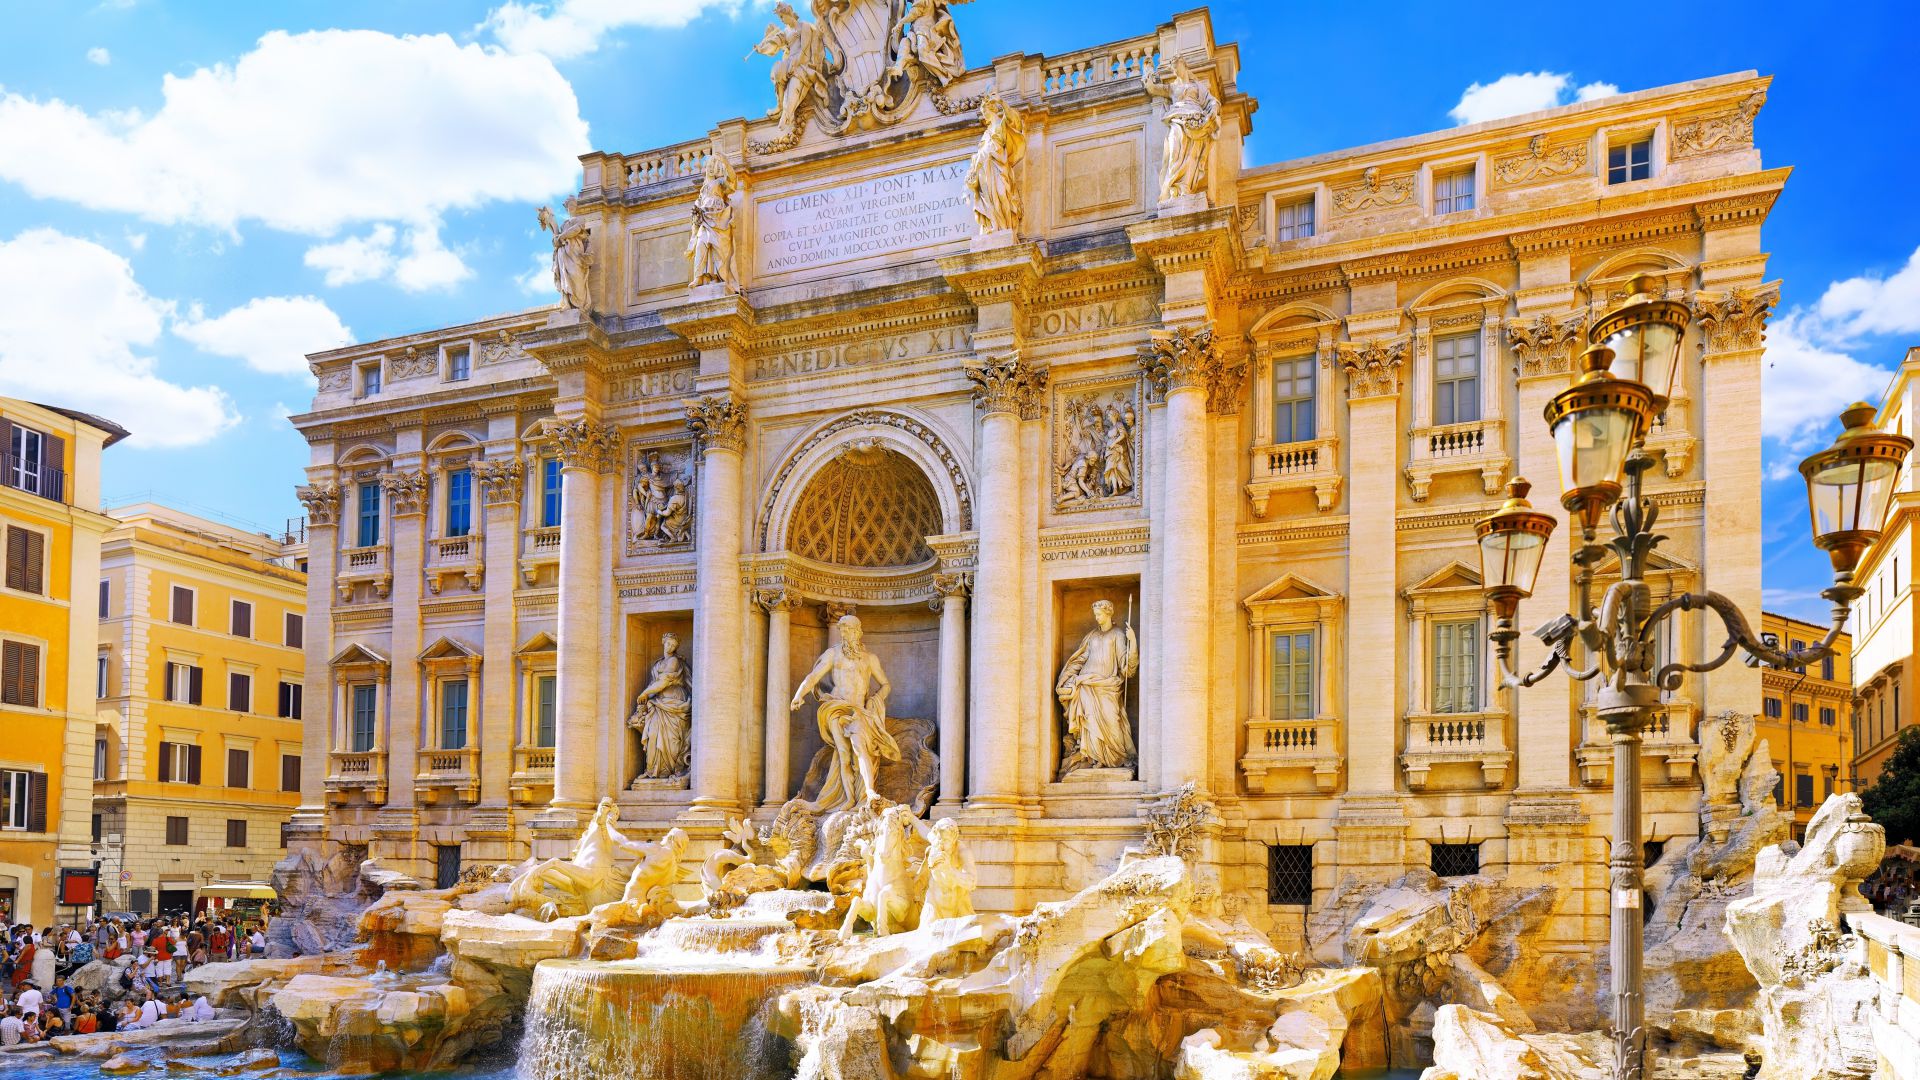 Фонтан Треви, Рим, Италия, туризм, Путешествие, Trevi Fountain, Rome, Italy, Tourism, Travel (horizontal)